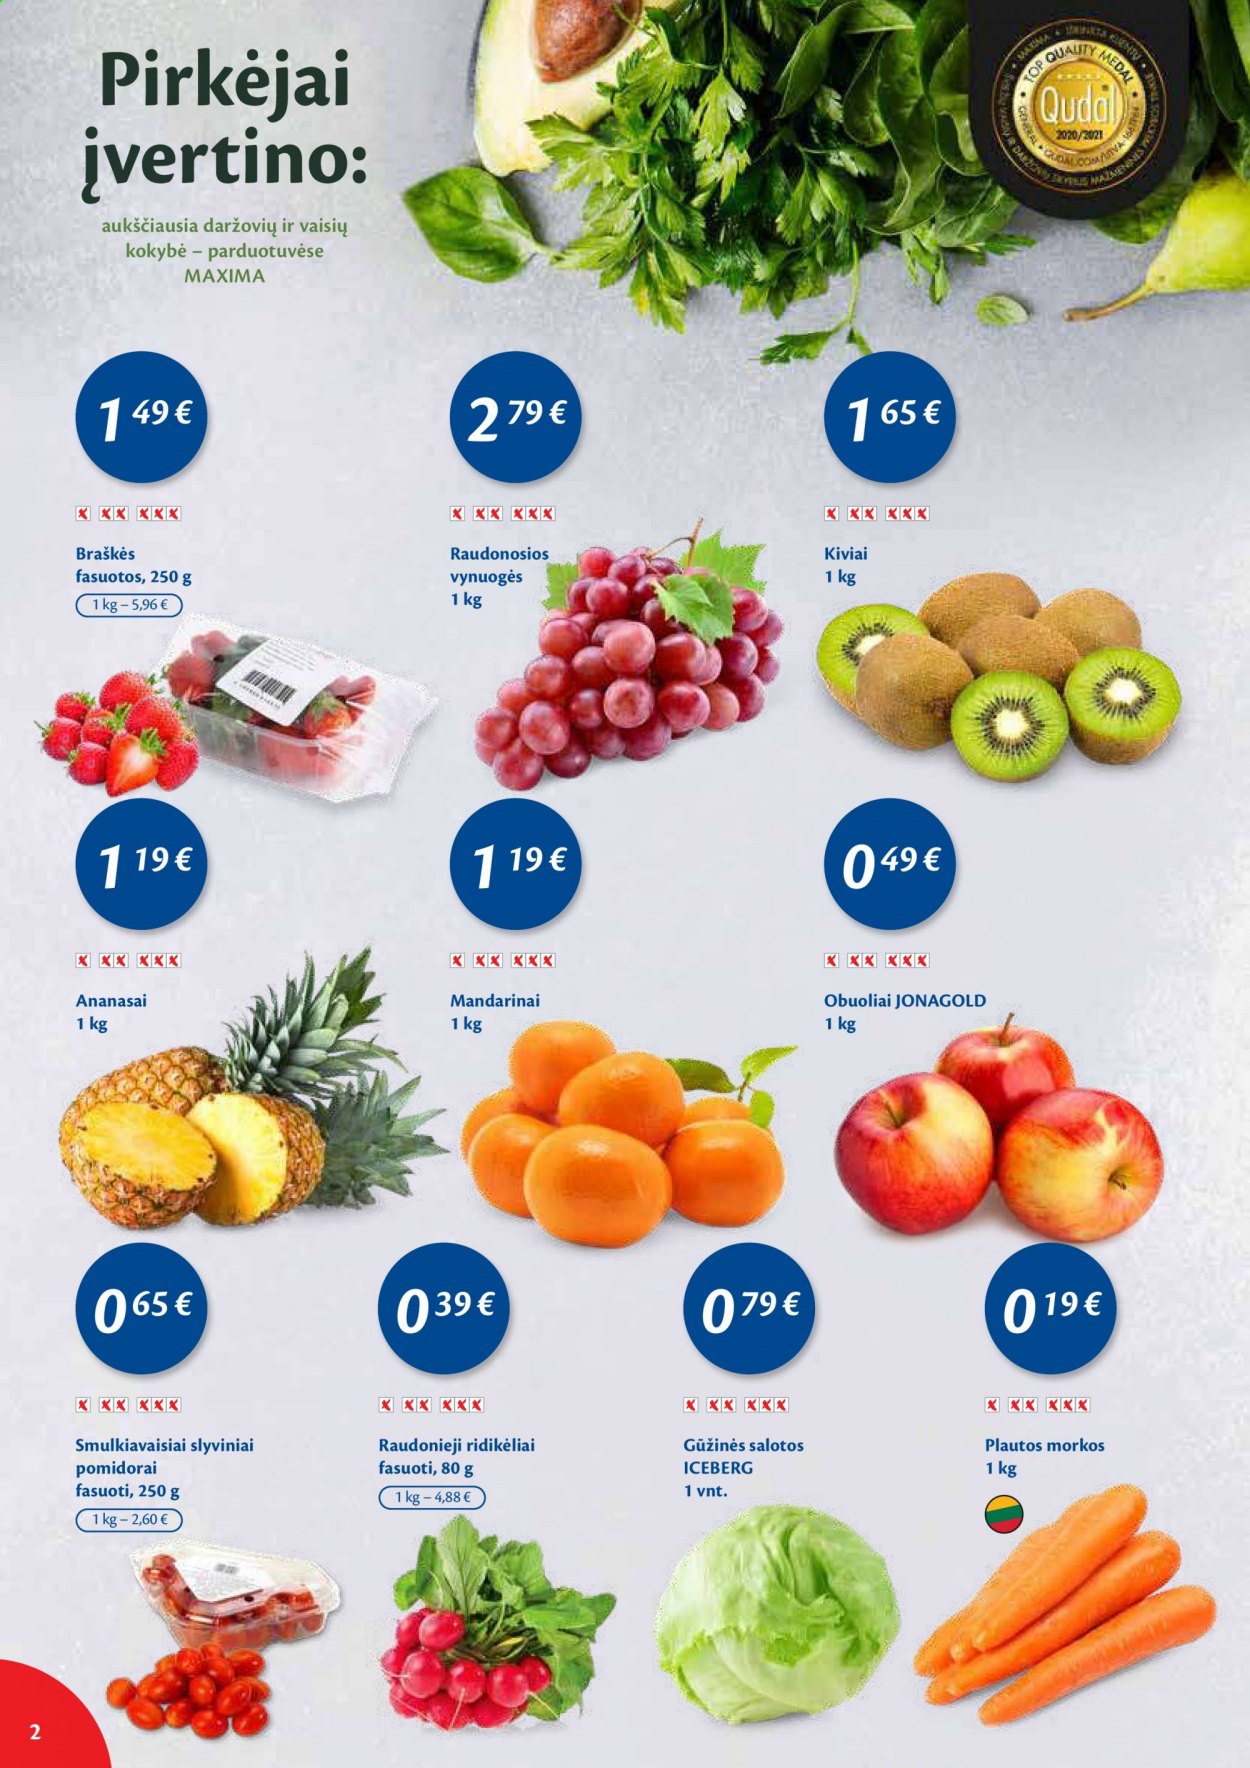 thumbnail - „Maxima“ leidinys - 2021 02 02 - 2021 02 08 - Išpardavimų produktai - morkos, pomidorai, ridikėliai, salotos, slyviniai pomidorai, smulkiavaisiai slyviniai pomidorai, ananasai, braškės, obuolys, vynuogės, mandarinai. 2 puslapis.